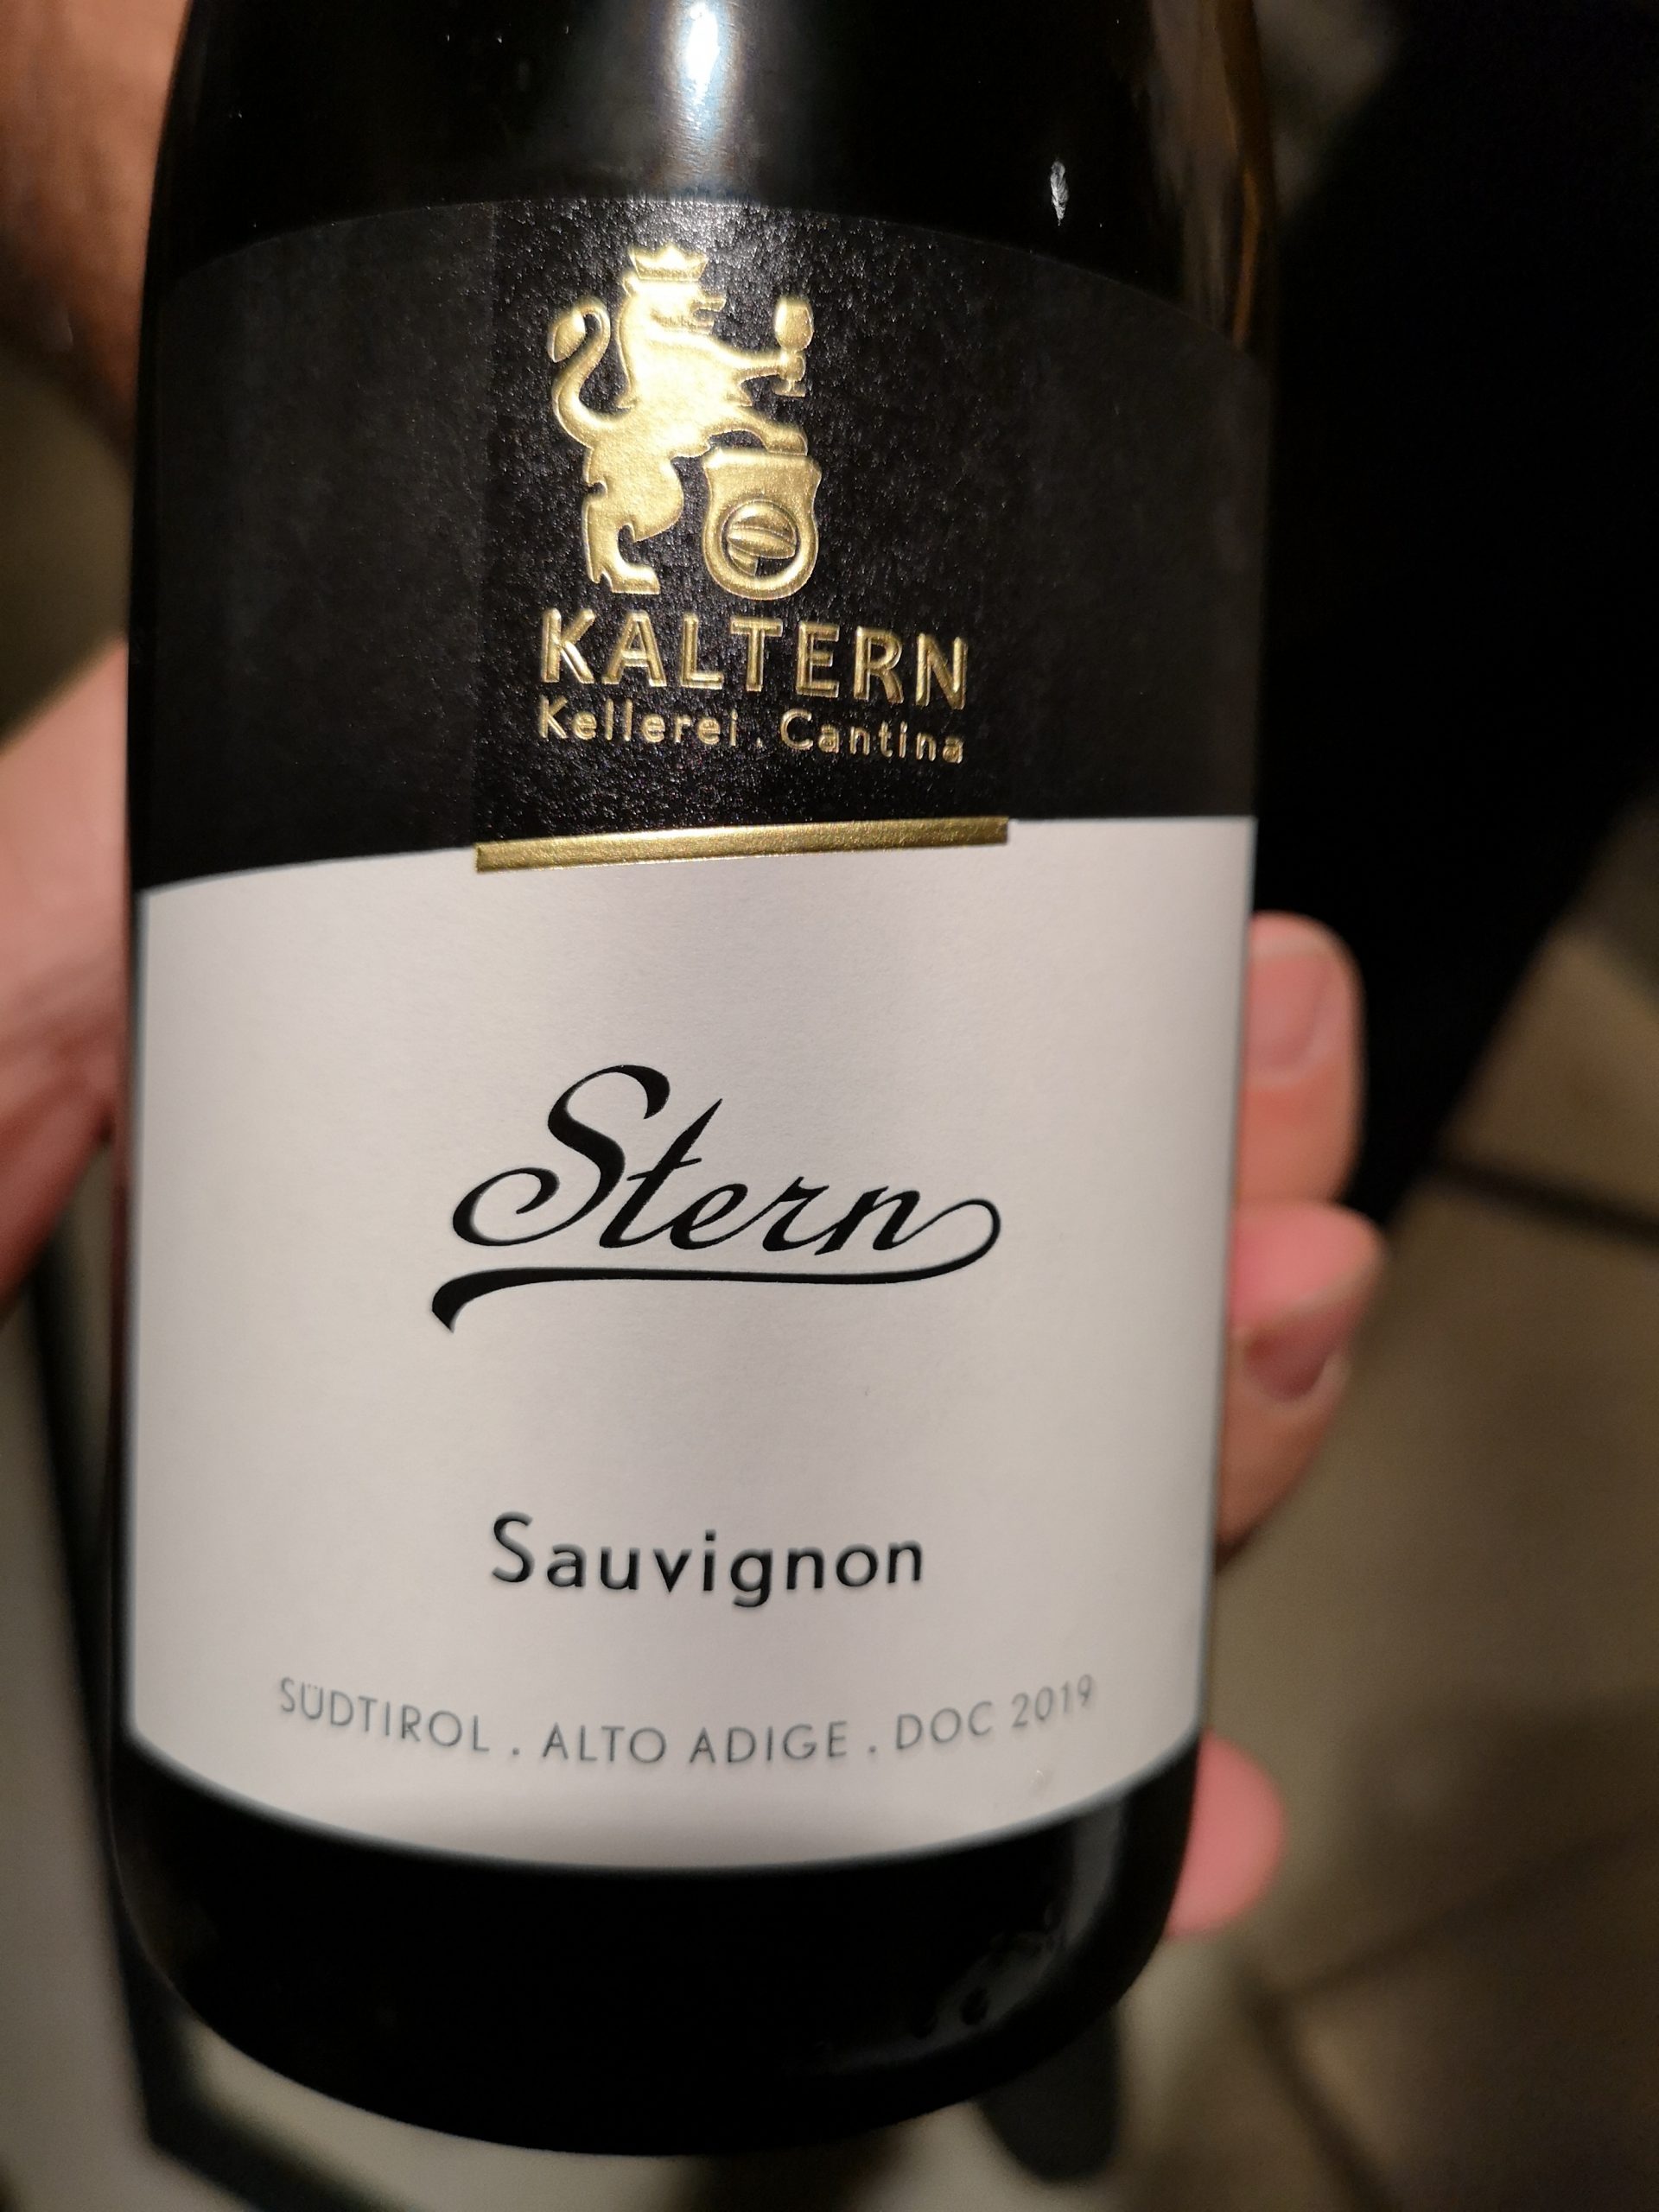 2019 Sauvignon Blanc Stern | Kellerei Kaltern